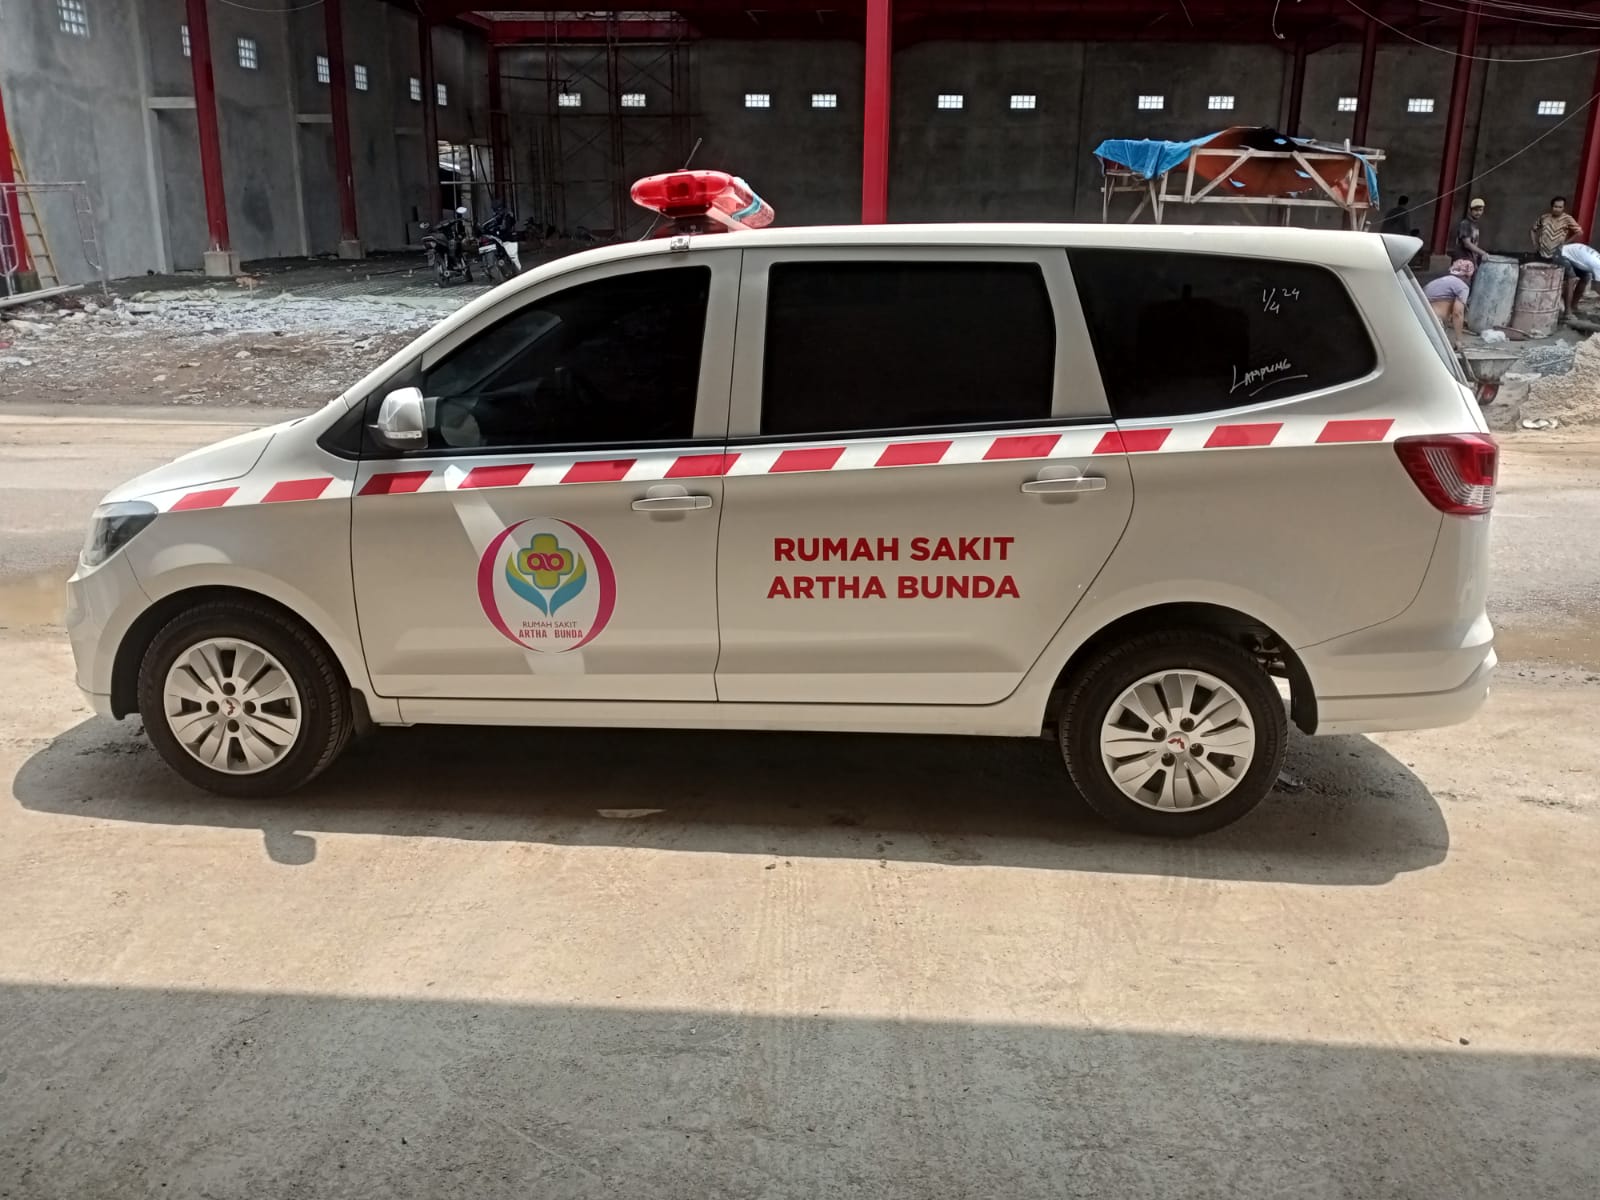 Harga Karoseri Ambulance Berkualitas Jawa Timur